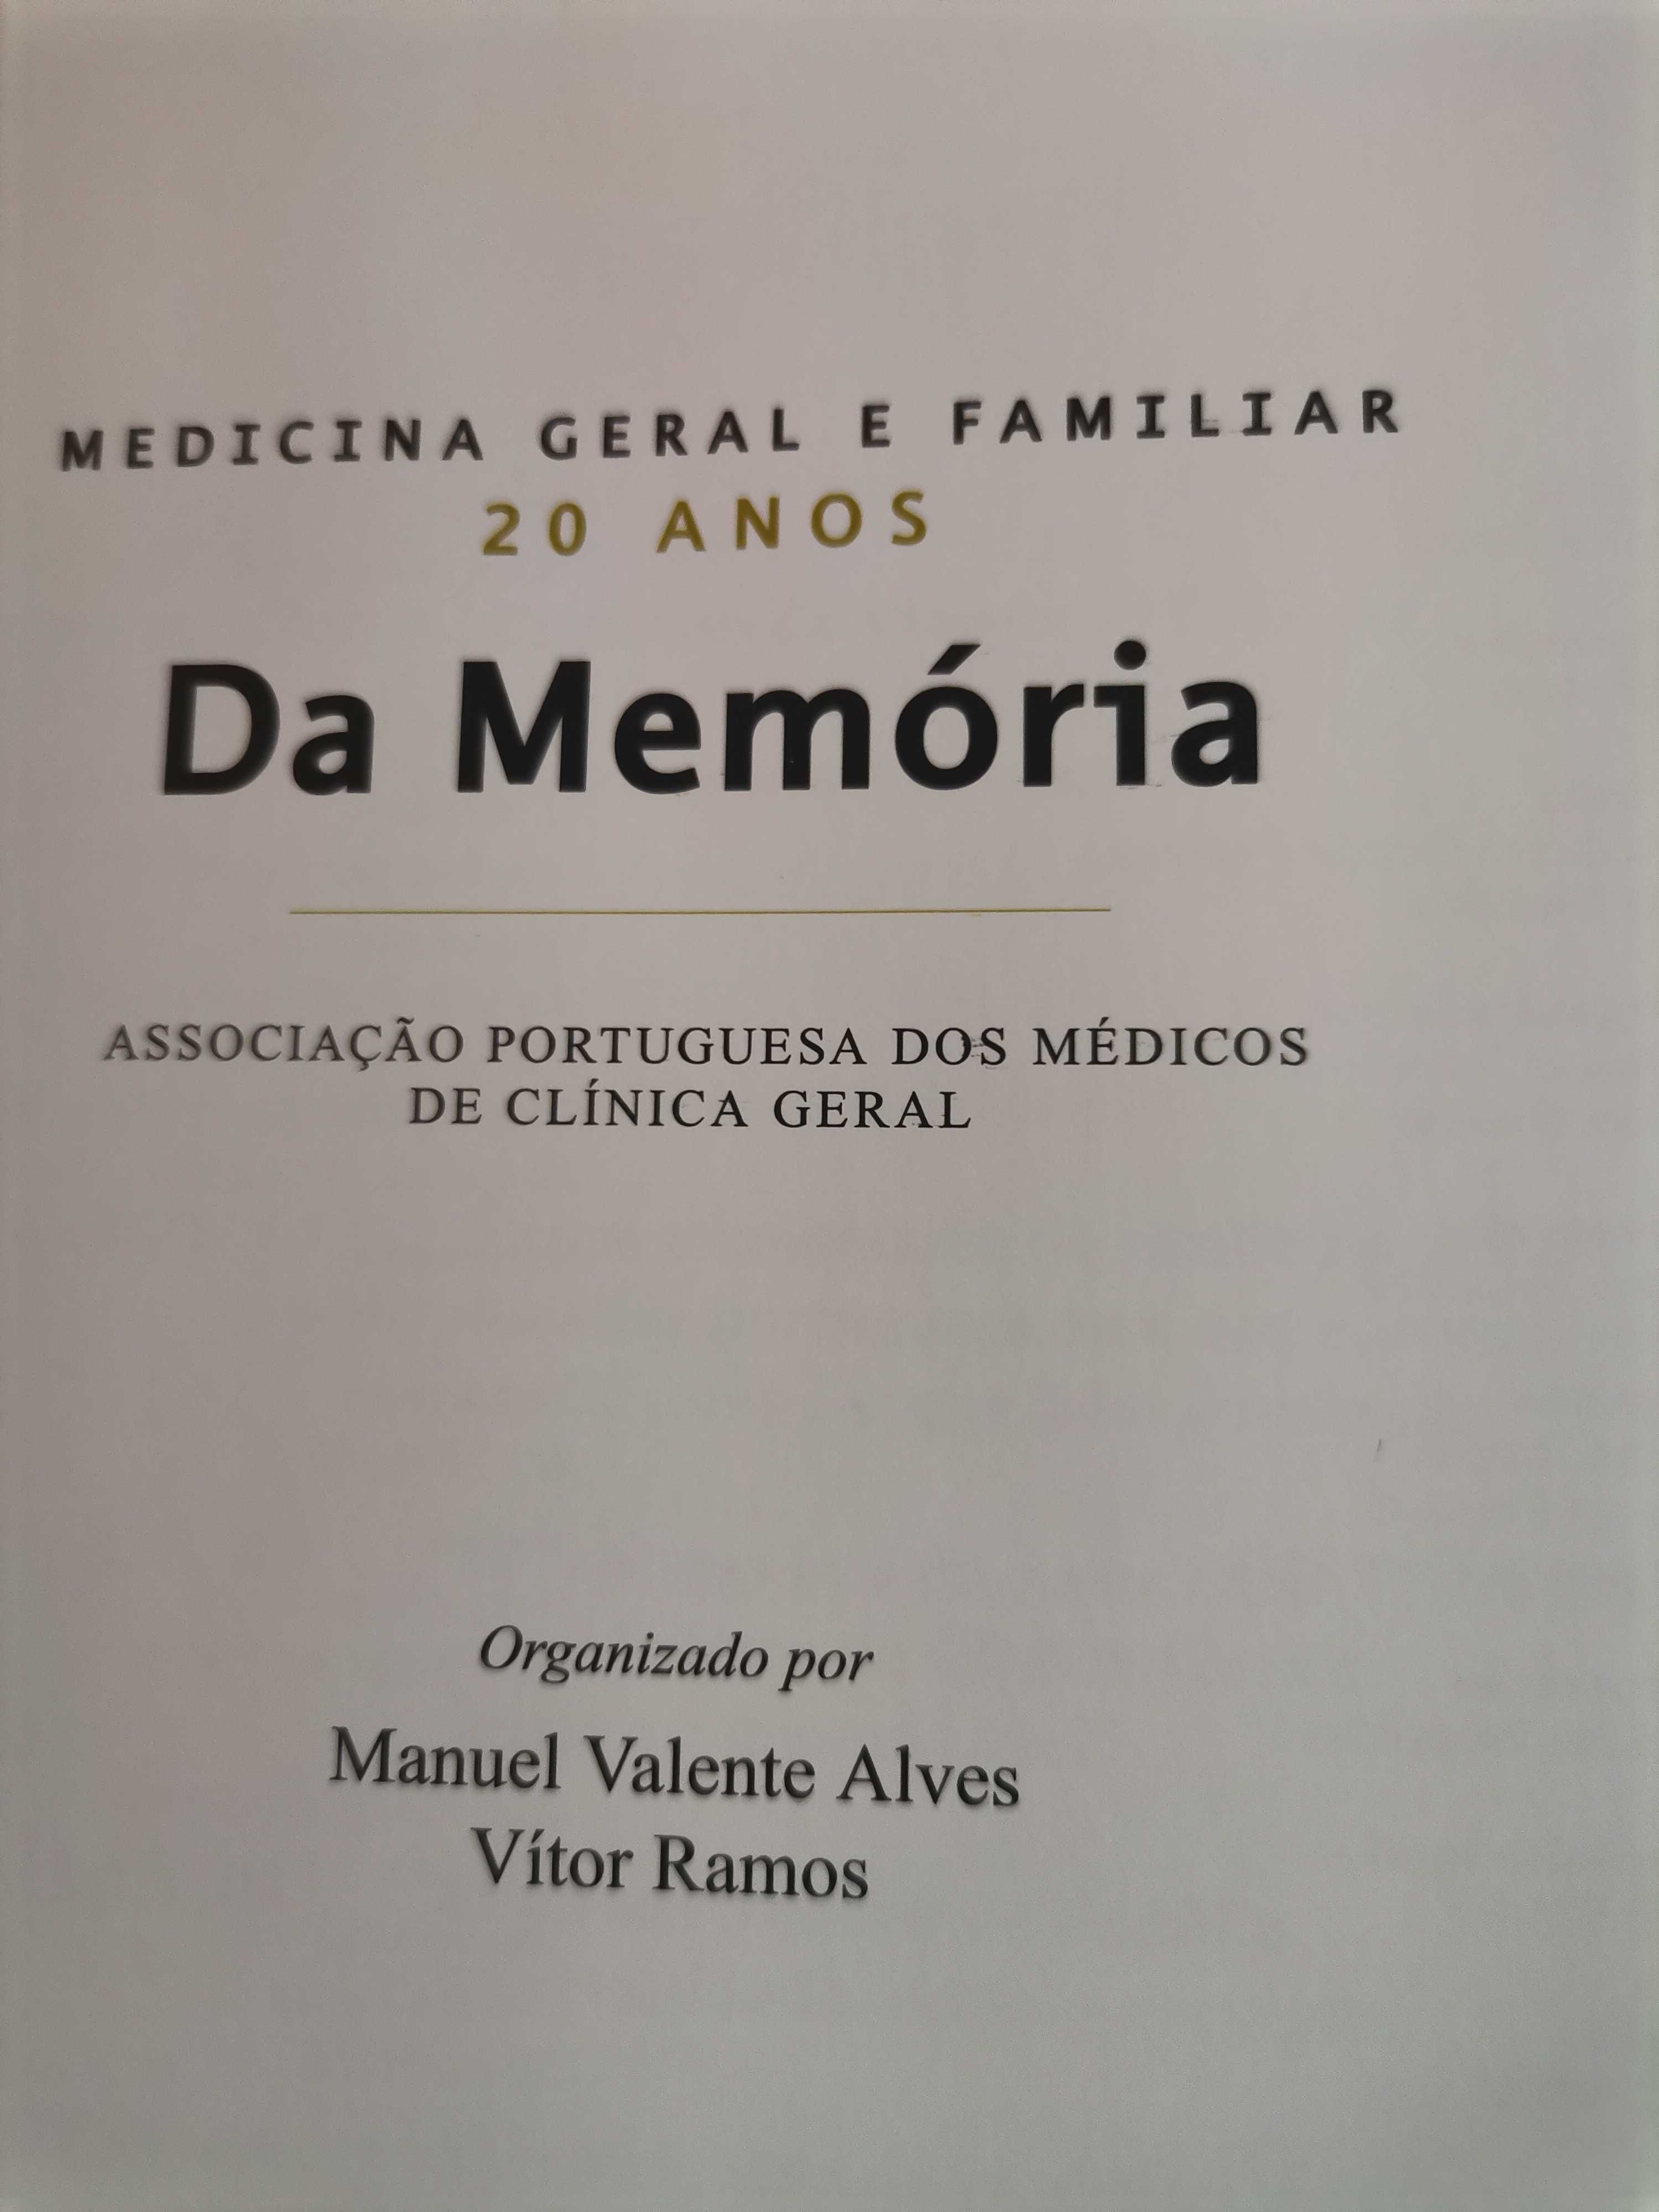 Medicina geral e familiar da memória